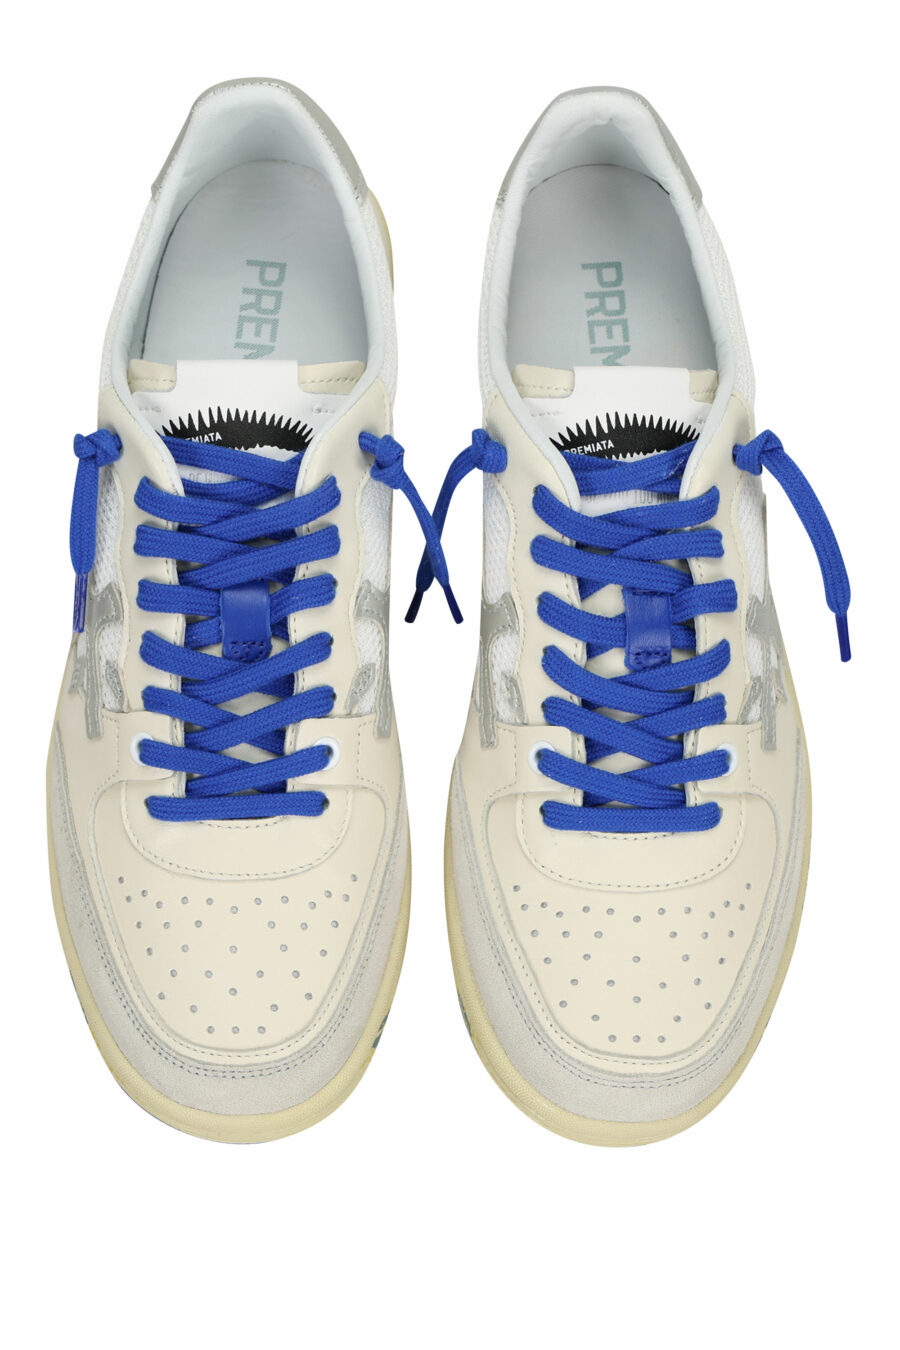 Zapatillas blancas con azul BSKTCLAY 6810 - 8053680315294 4